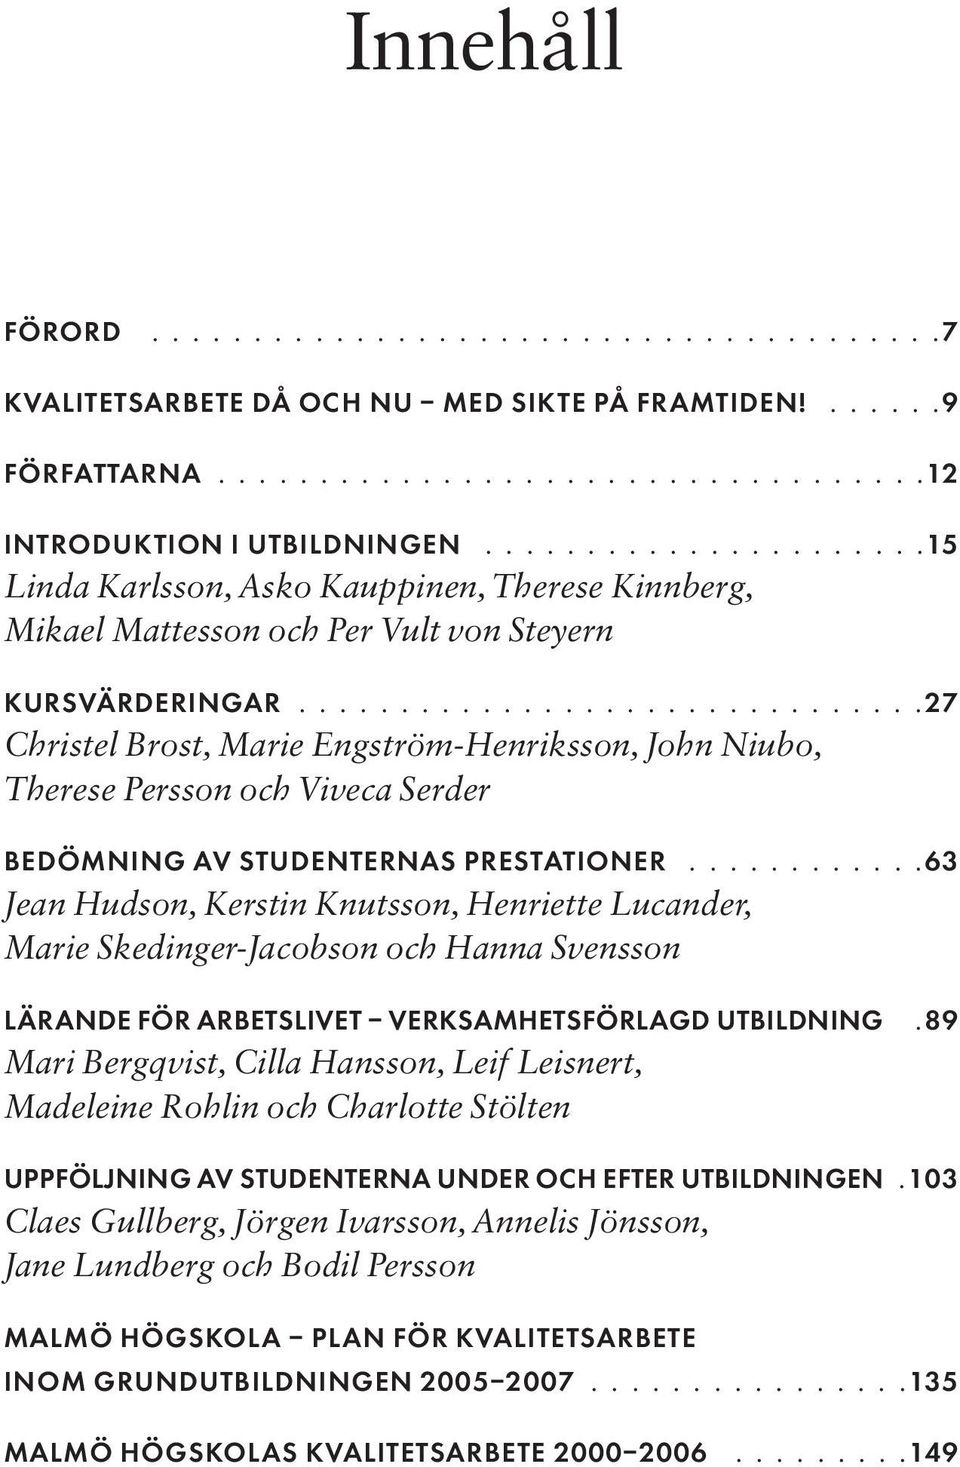 ..............................27 Christel Brost, Marie Engström-Henriksson, John Niubo, Therese Persson och Viveca Serder BEDÖMNING AV STUDENTERNAS PRESTATIONER.